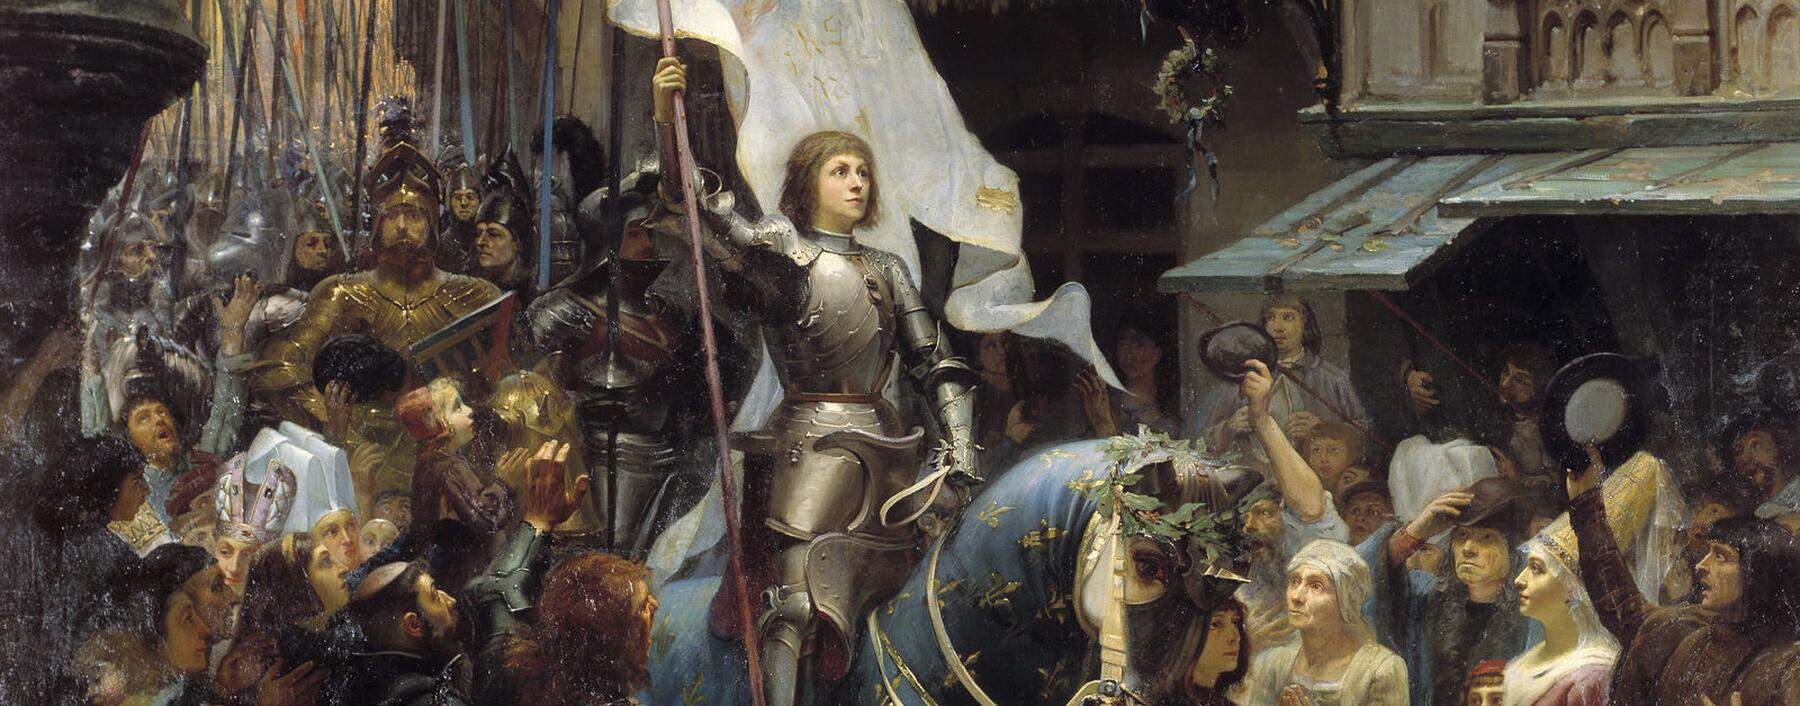 Der triumphale Einzug Jeanne d'Arcs in Orleans. Gemälde von 1887.